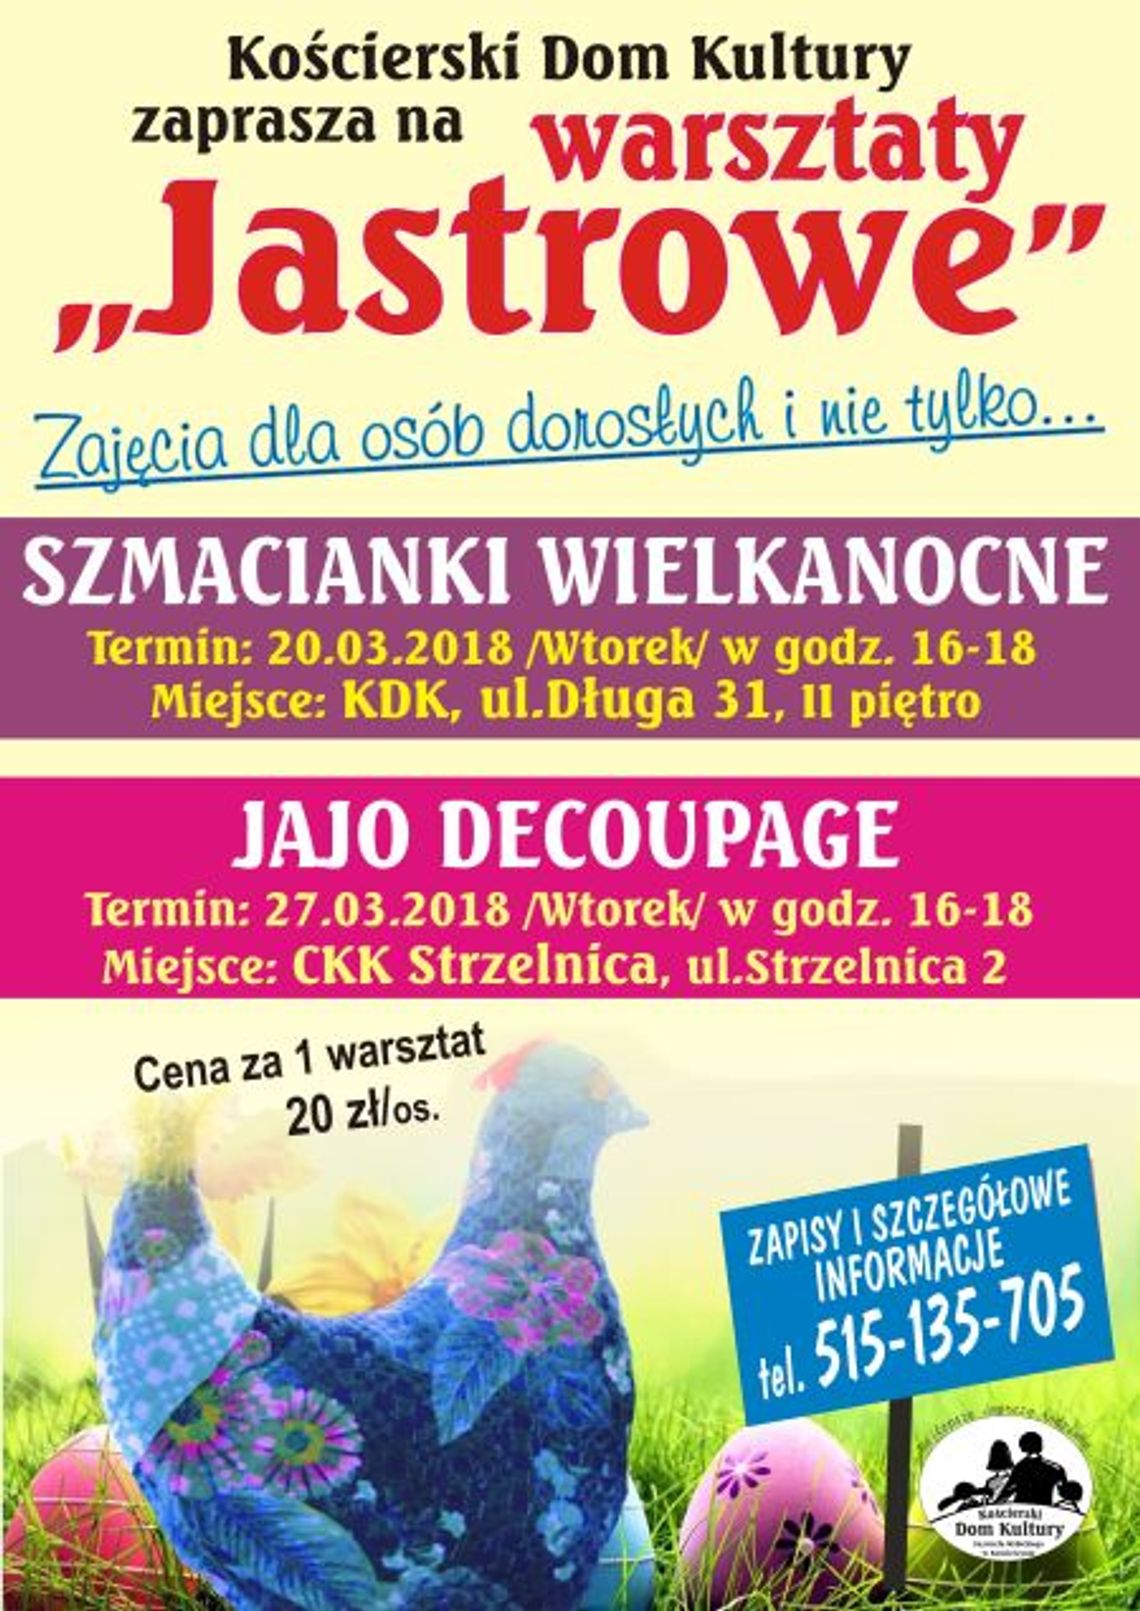 Warsztaty Jastrowe - jajo decoupage